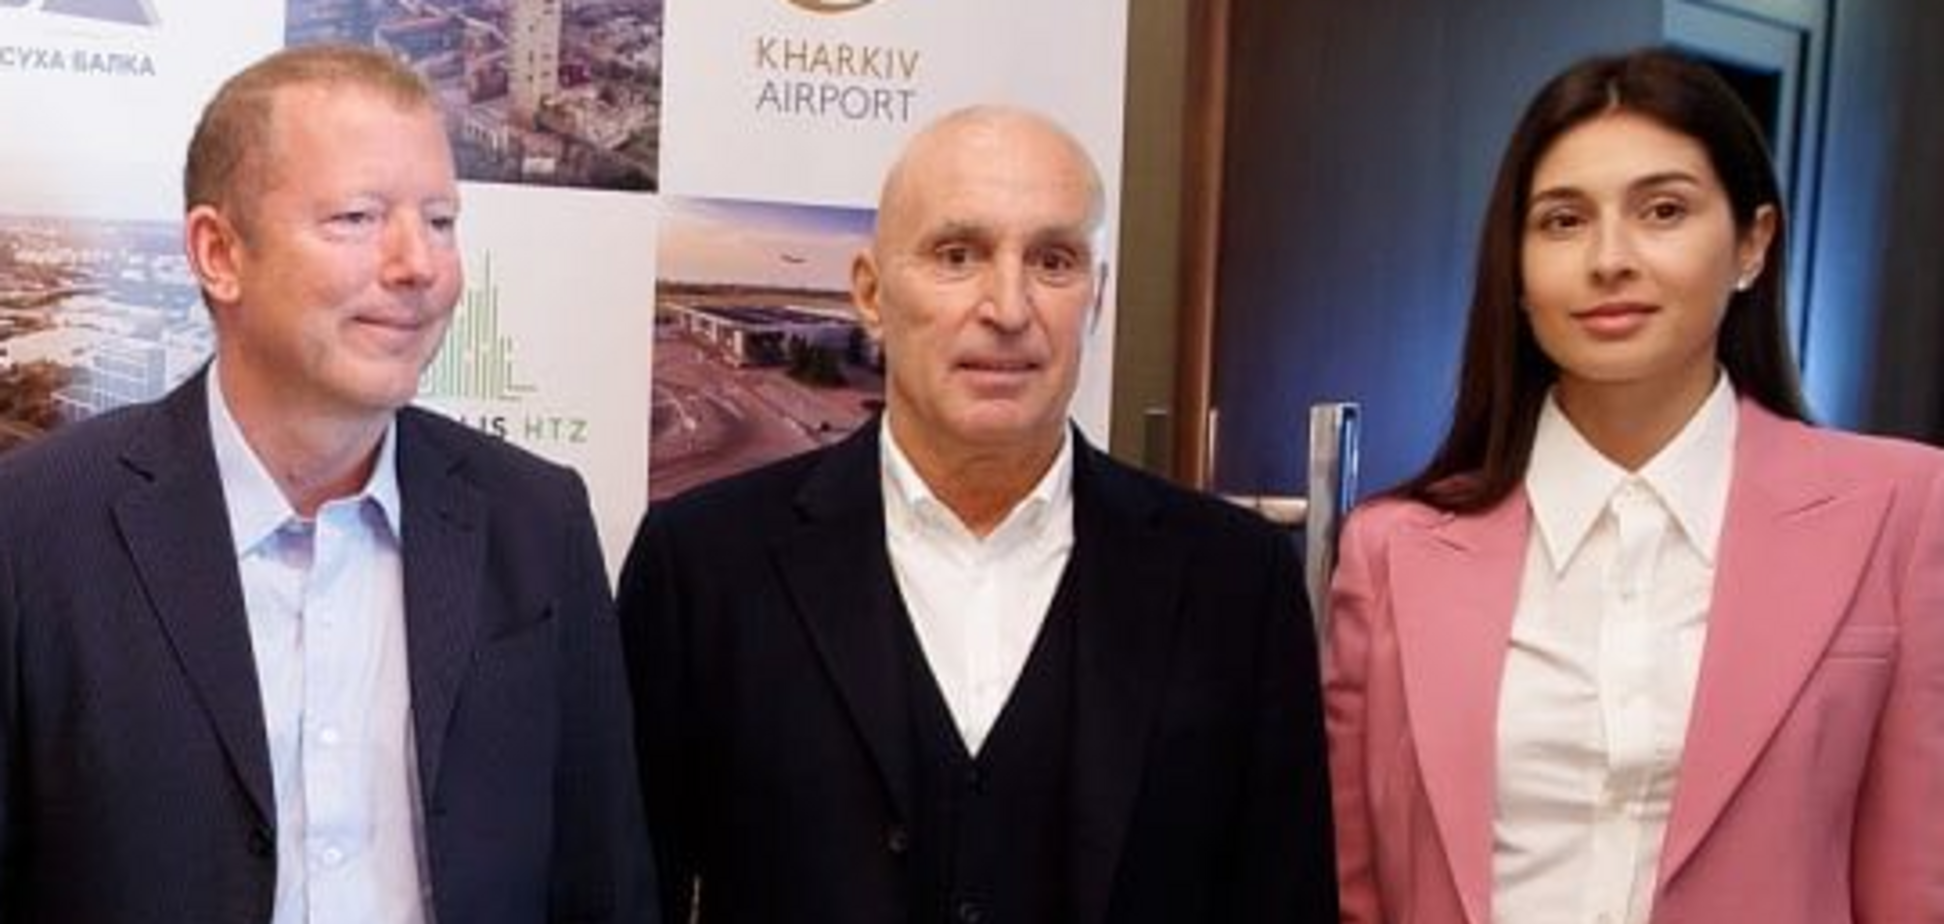 Семья Ротшильдов заявила о готовности инвестировать в 'Экополис ХТЗ' Ярославского